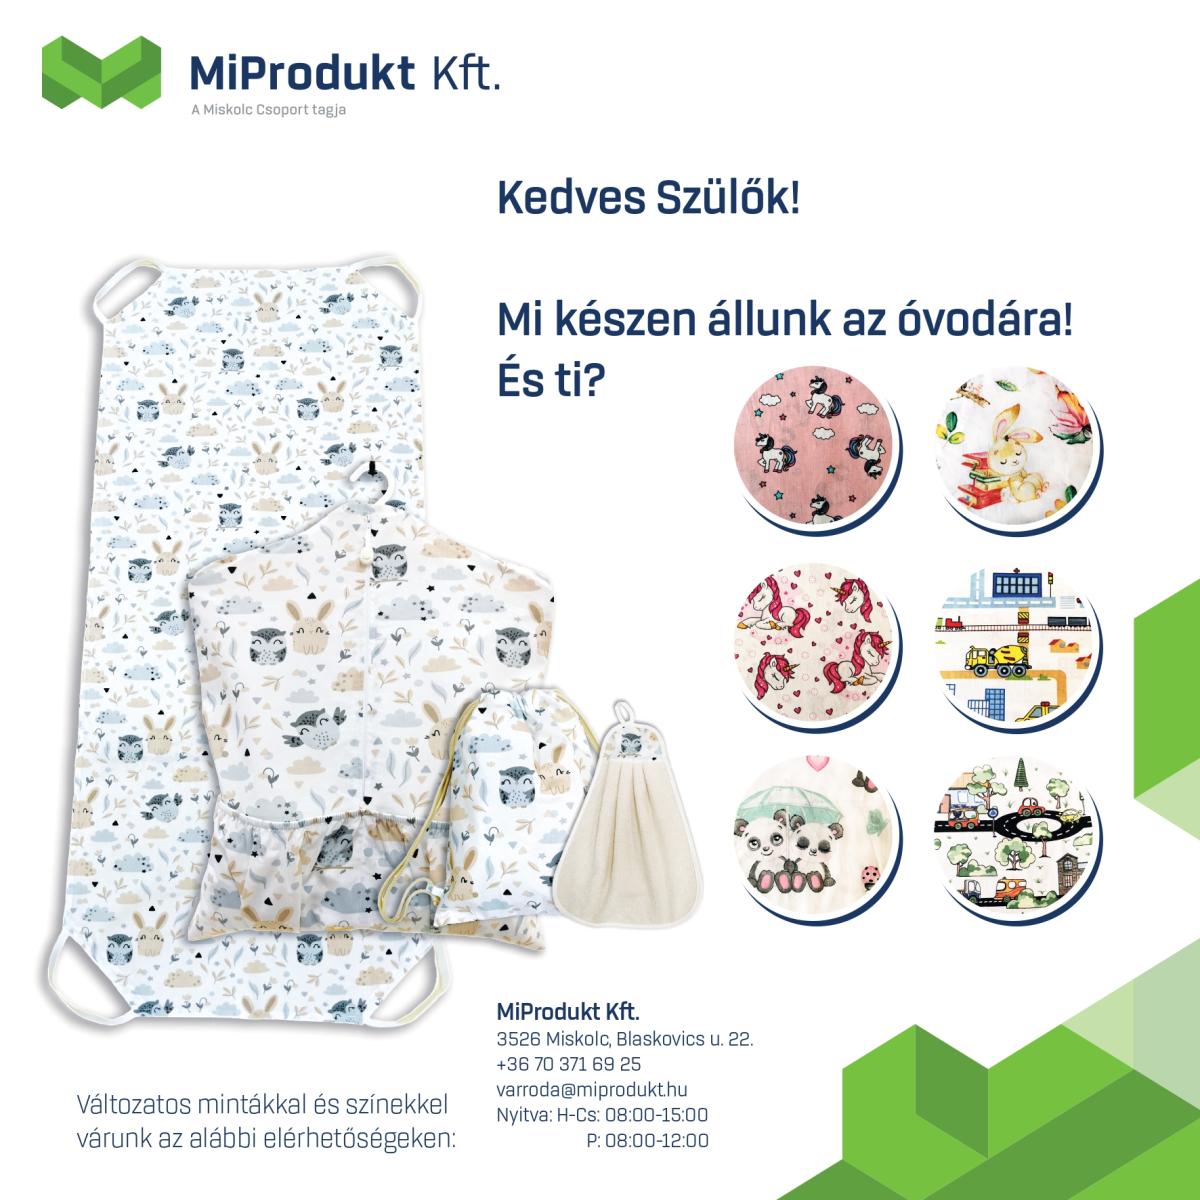 Óvodás csomagok rendelhetők a MiProdukt Kft-nél